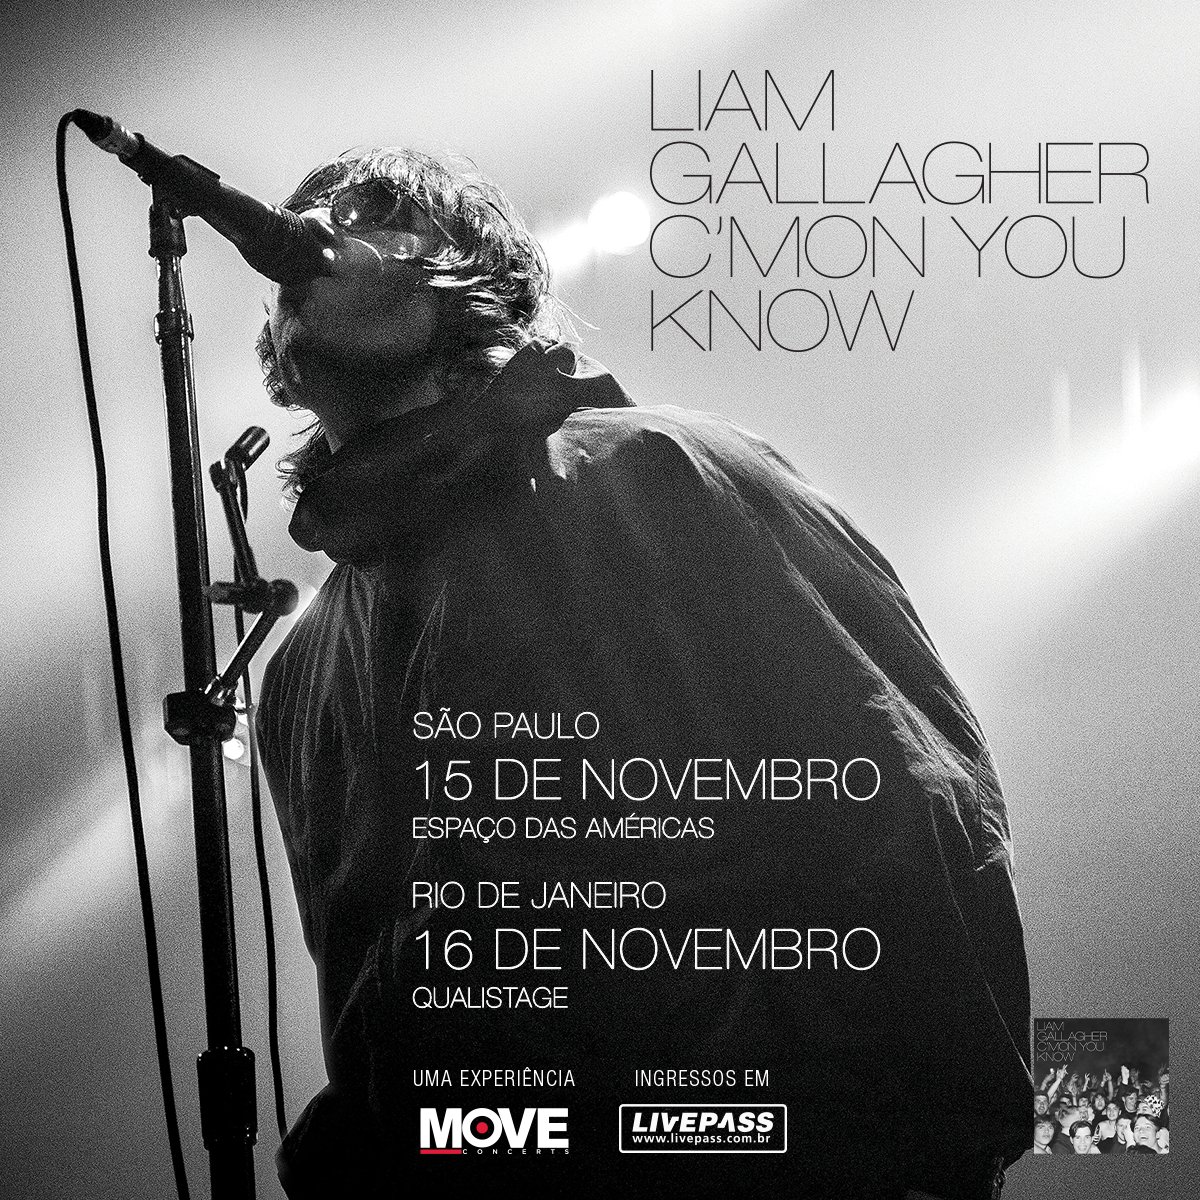 Fãs de Oasis e dos irmãos Gallagher, a notícia é boa: a Move Concerts anuncia a turnê Liam Gallagher no Brasil com 'C'mon You Know' - seu terceiro álbum solo e o maior show de sua carreira. Vendas a partir de 16 de fevereiro em livepass.com.br #LiamGallagher #LiveIsBack